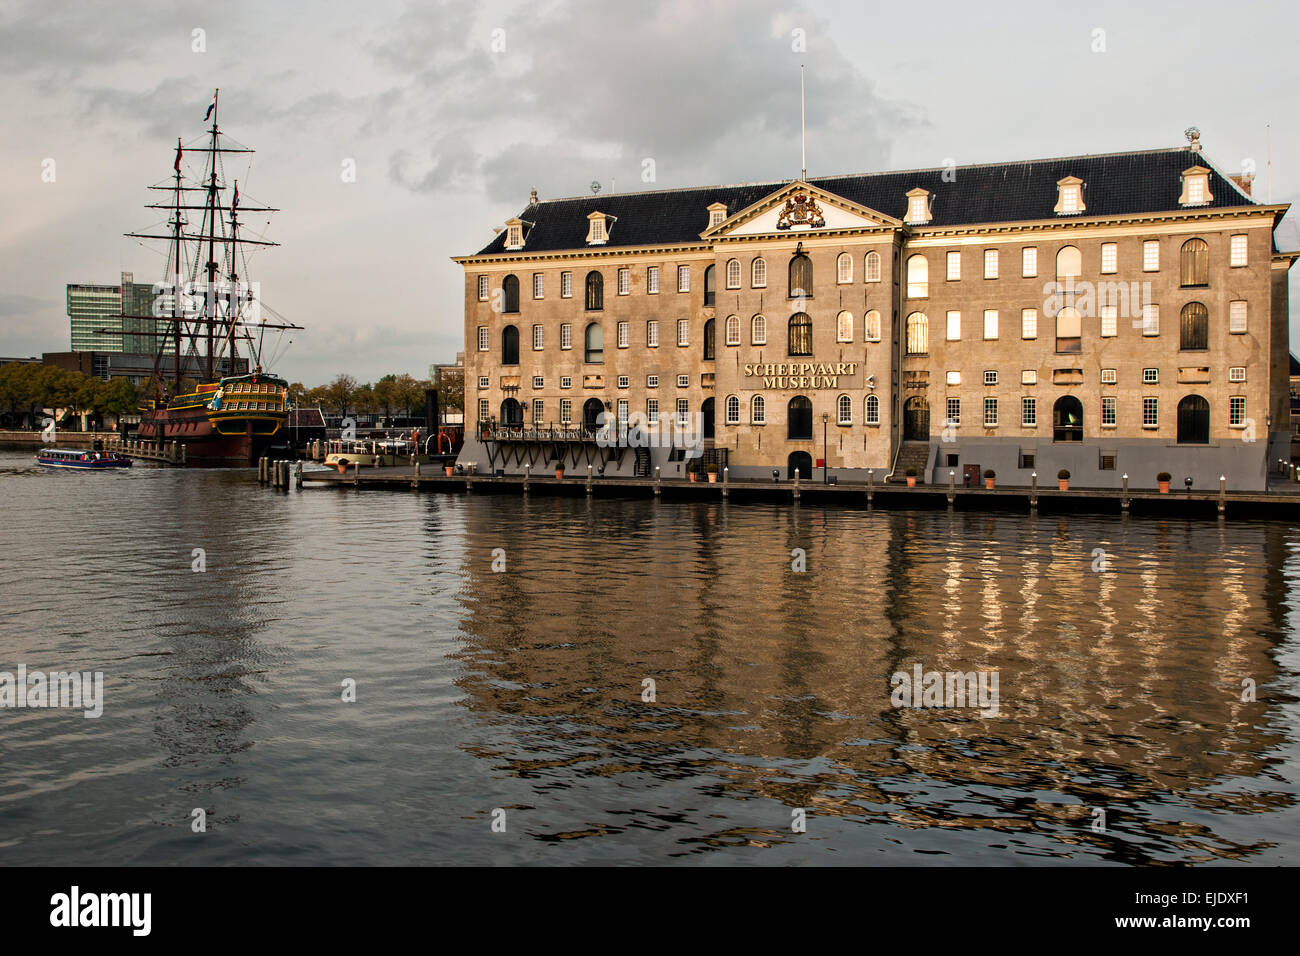 Le Musée National de la marine ou de Scheepvaart et réplique de l'Amsterdam, un navire qui navigue entre les Pays-Bas et les Indes orientales d'Amsterdam. Banque D'Images